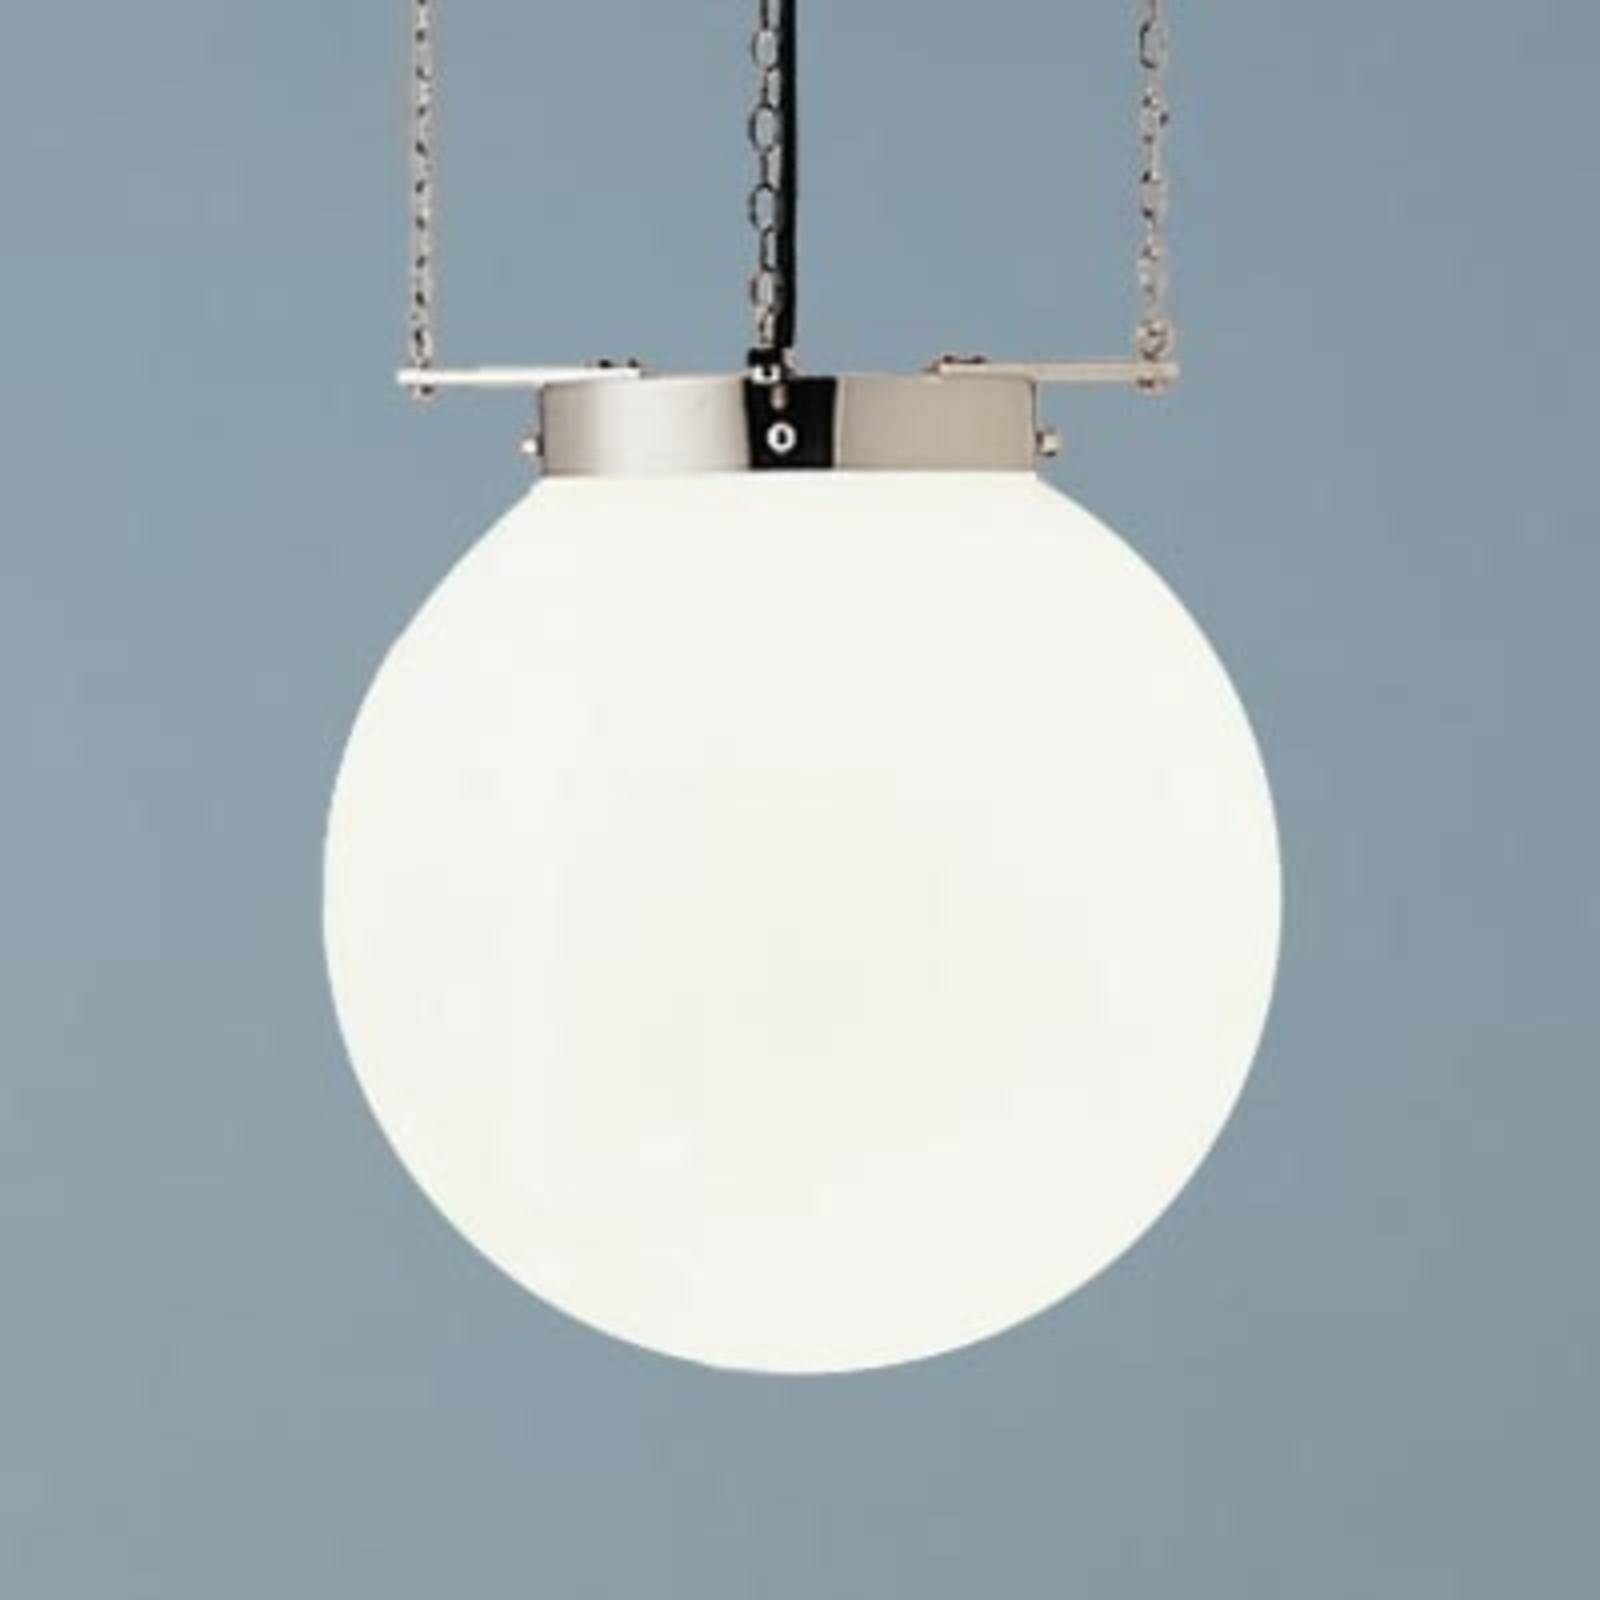 Lampa wisząca w stylu Bauhaus 25 cm nikiel